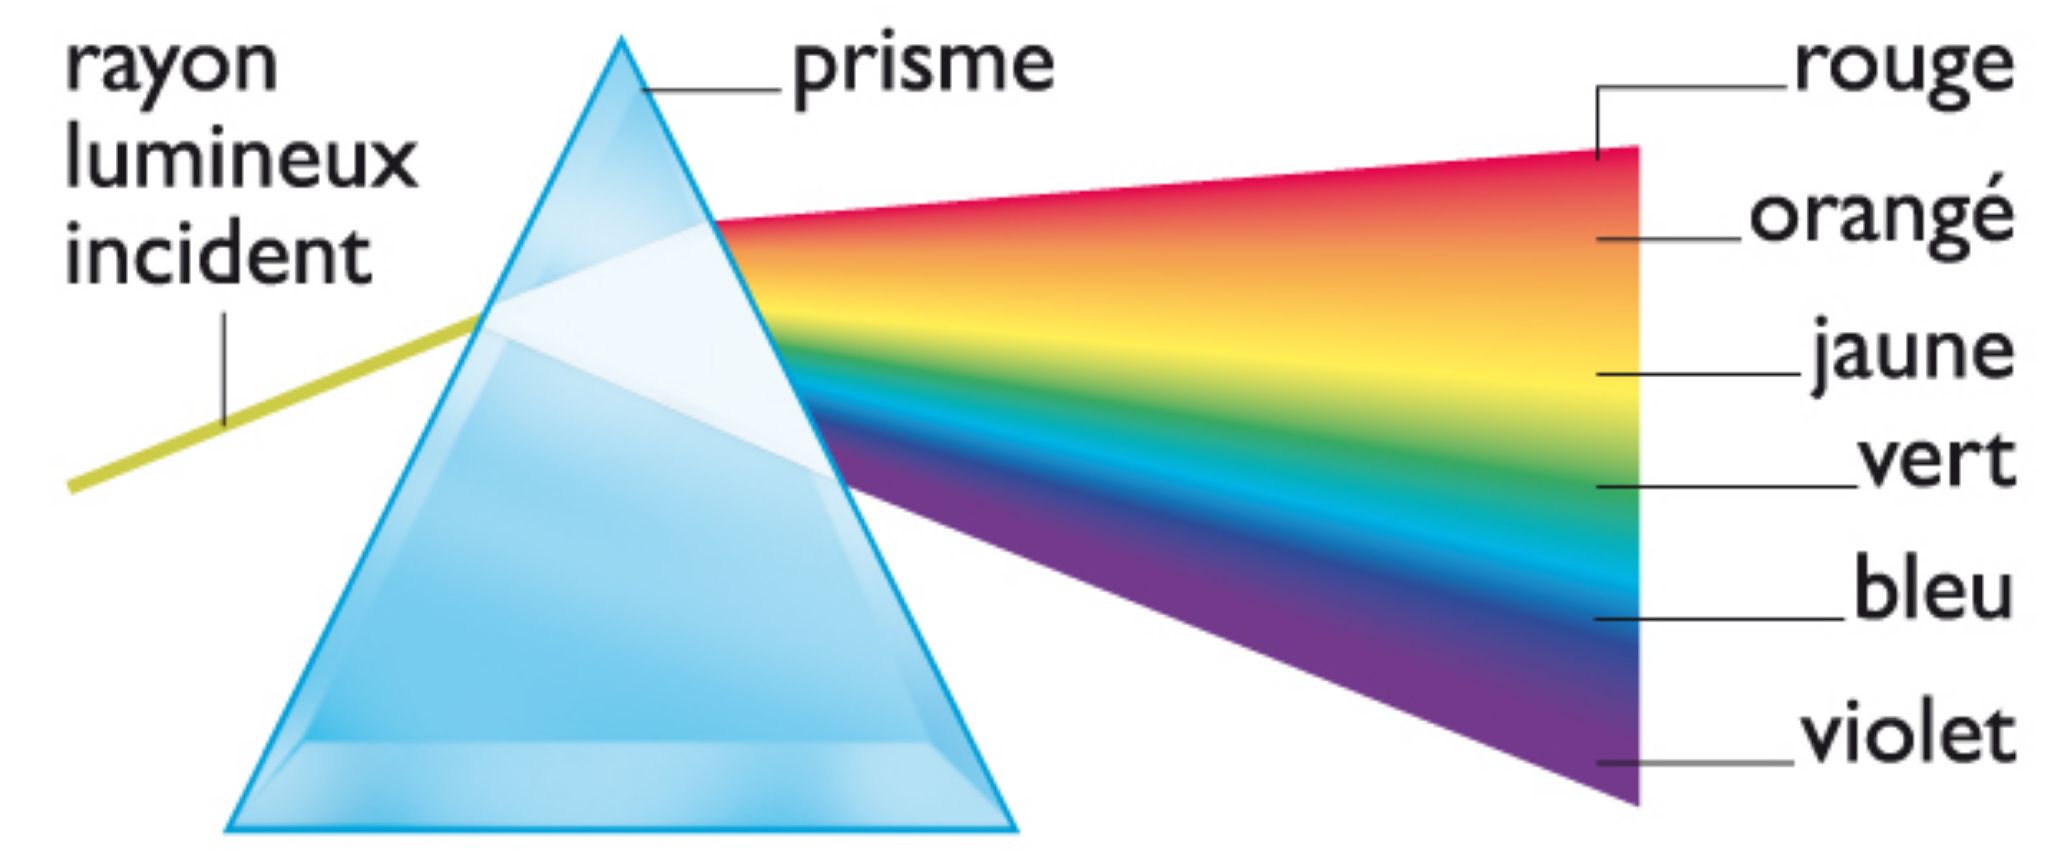 La décomposition de la lumière blanche au travers d’un prisme donne les toutes les couleurs de l’arc-en-ciel.